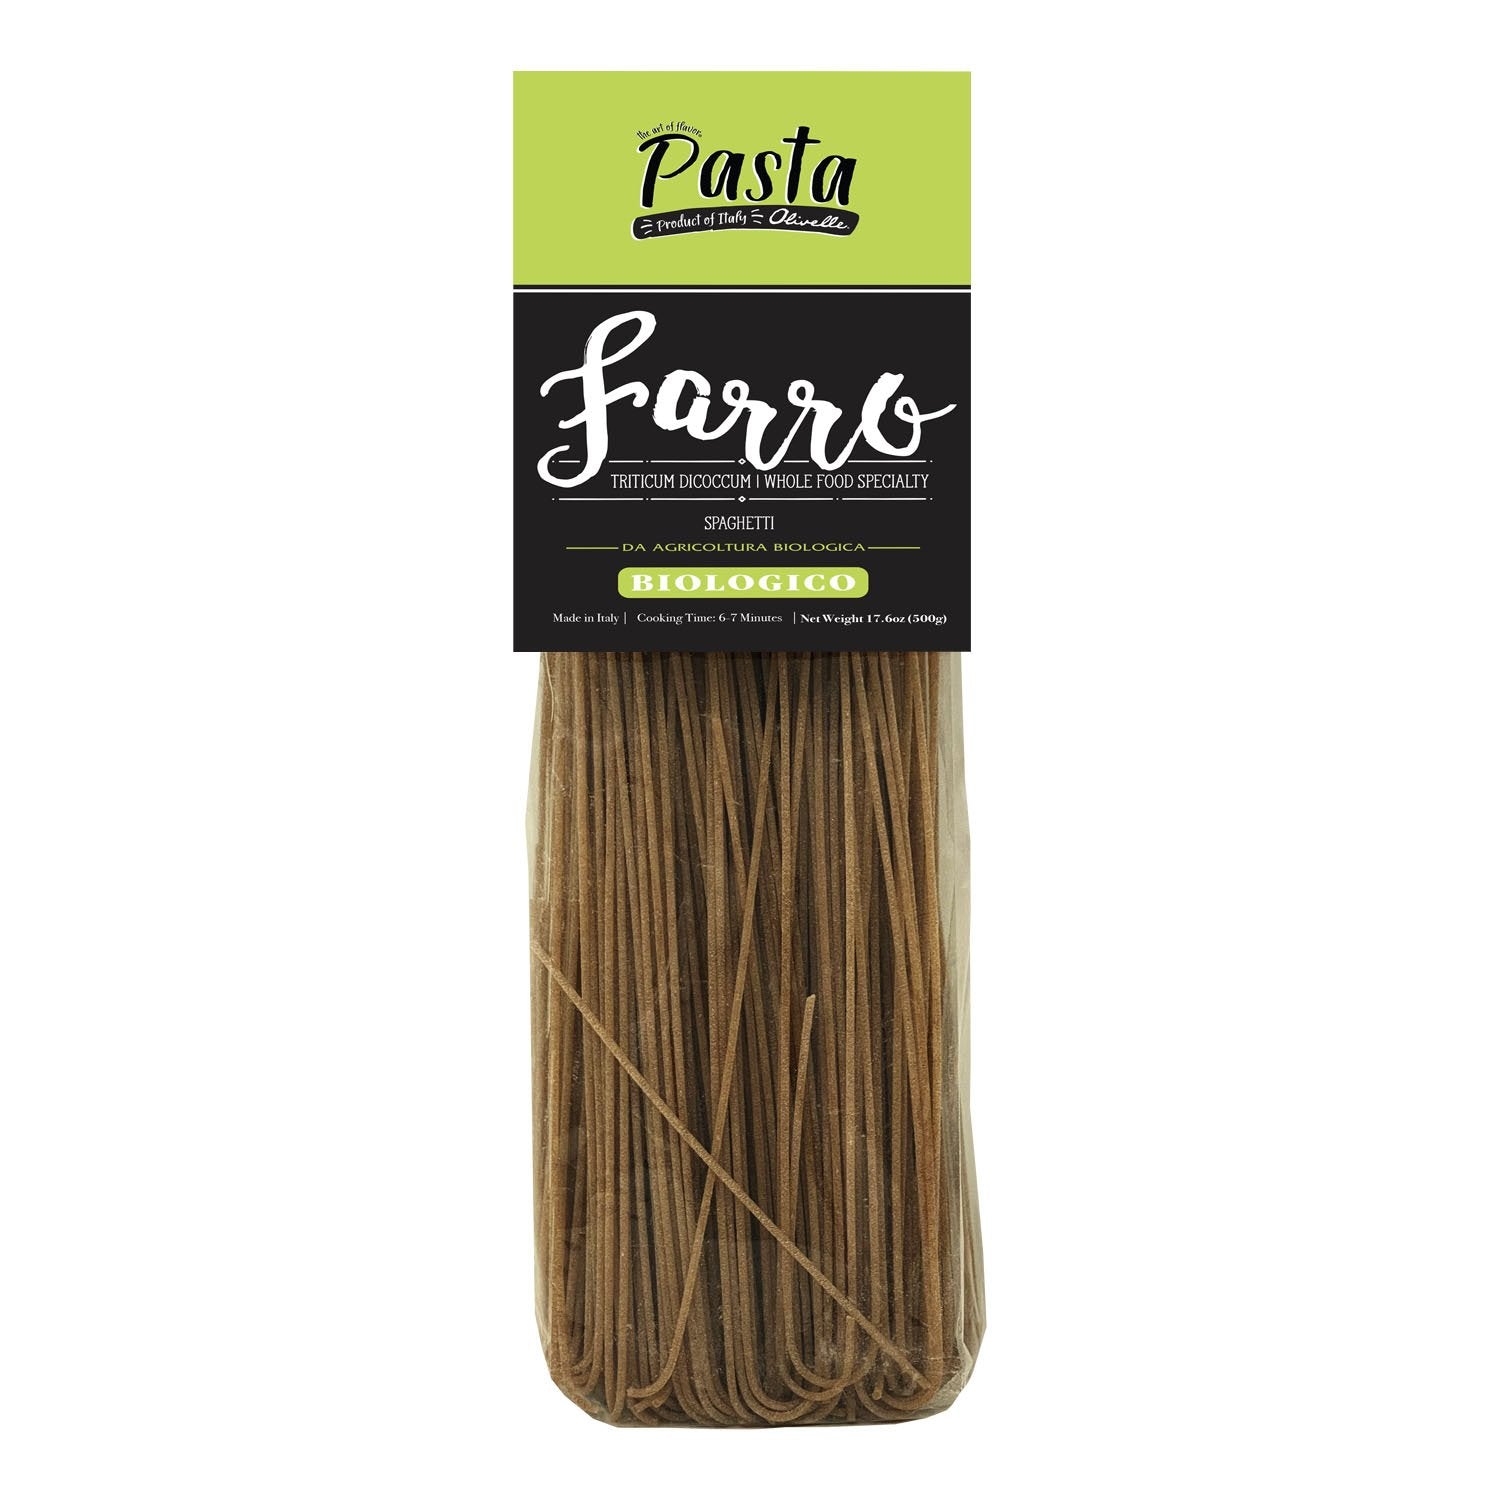 Farro Spaghetti Pasta